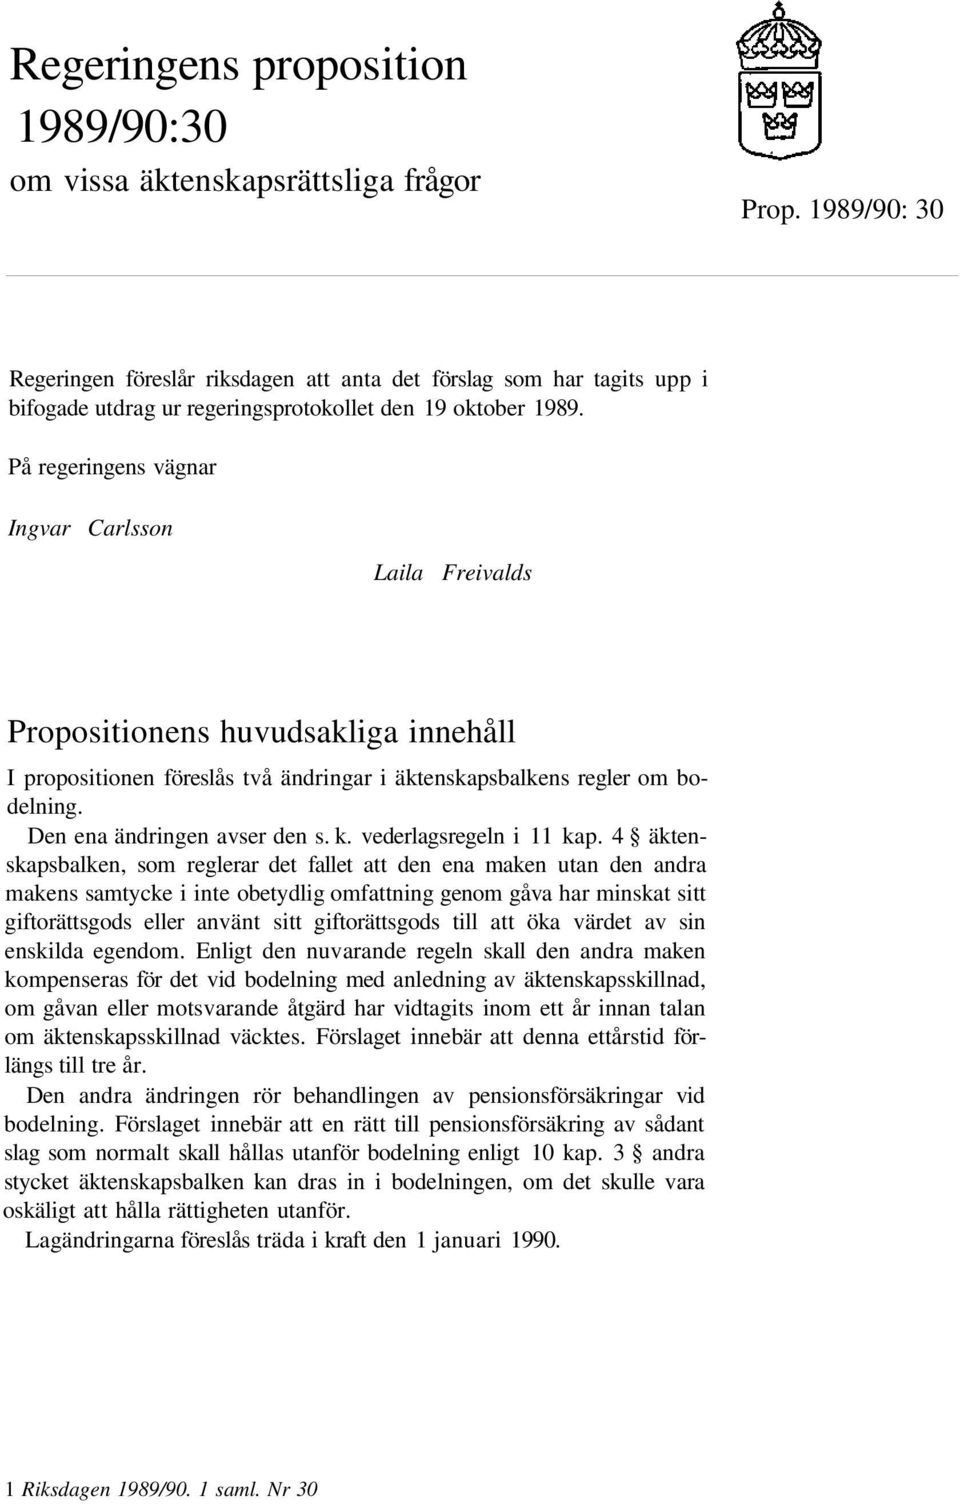 På regeringens vägnar Ingvar Carlsson Laila Freivalds Propositionens huvudsakliga innehåll I propositionen föreslås två ändringar i äktenskapsbalkens regler om bodelning.